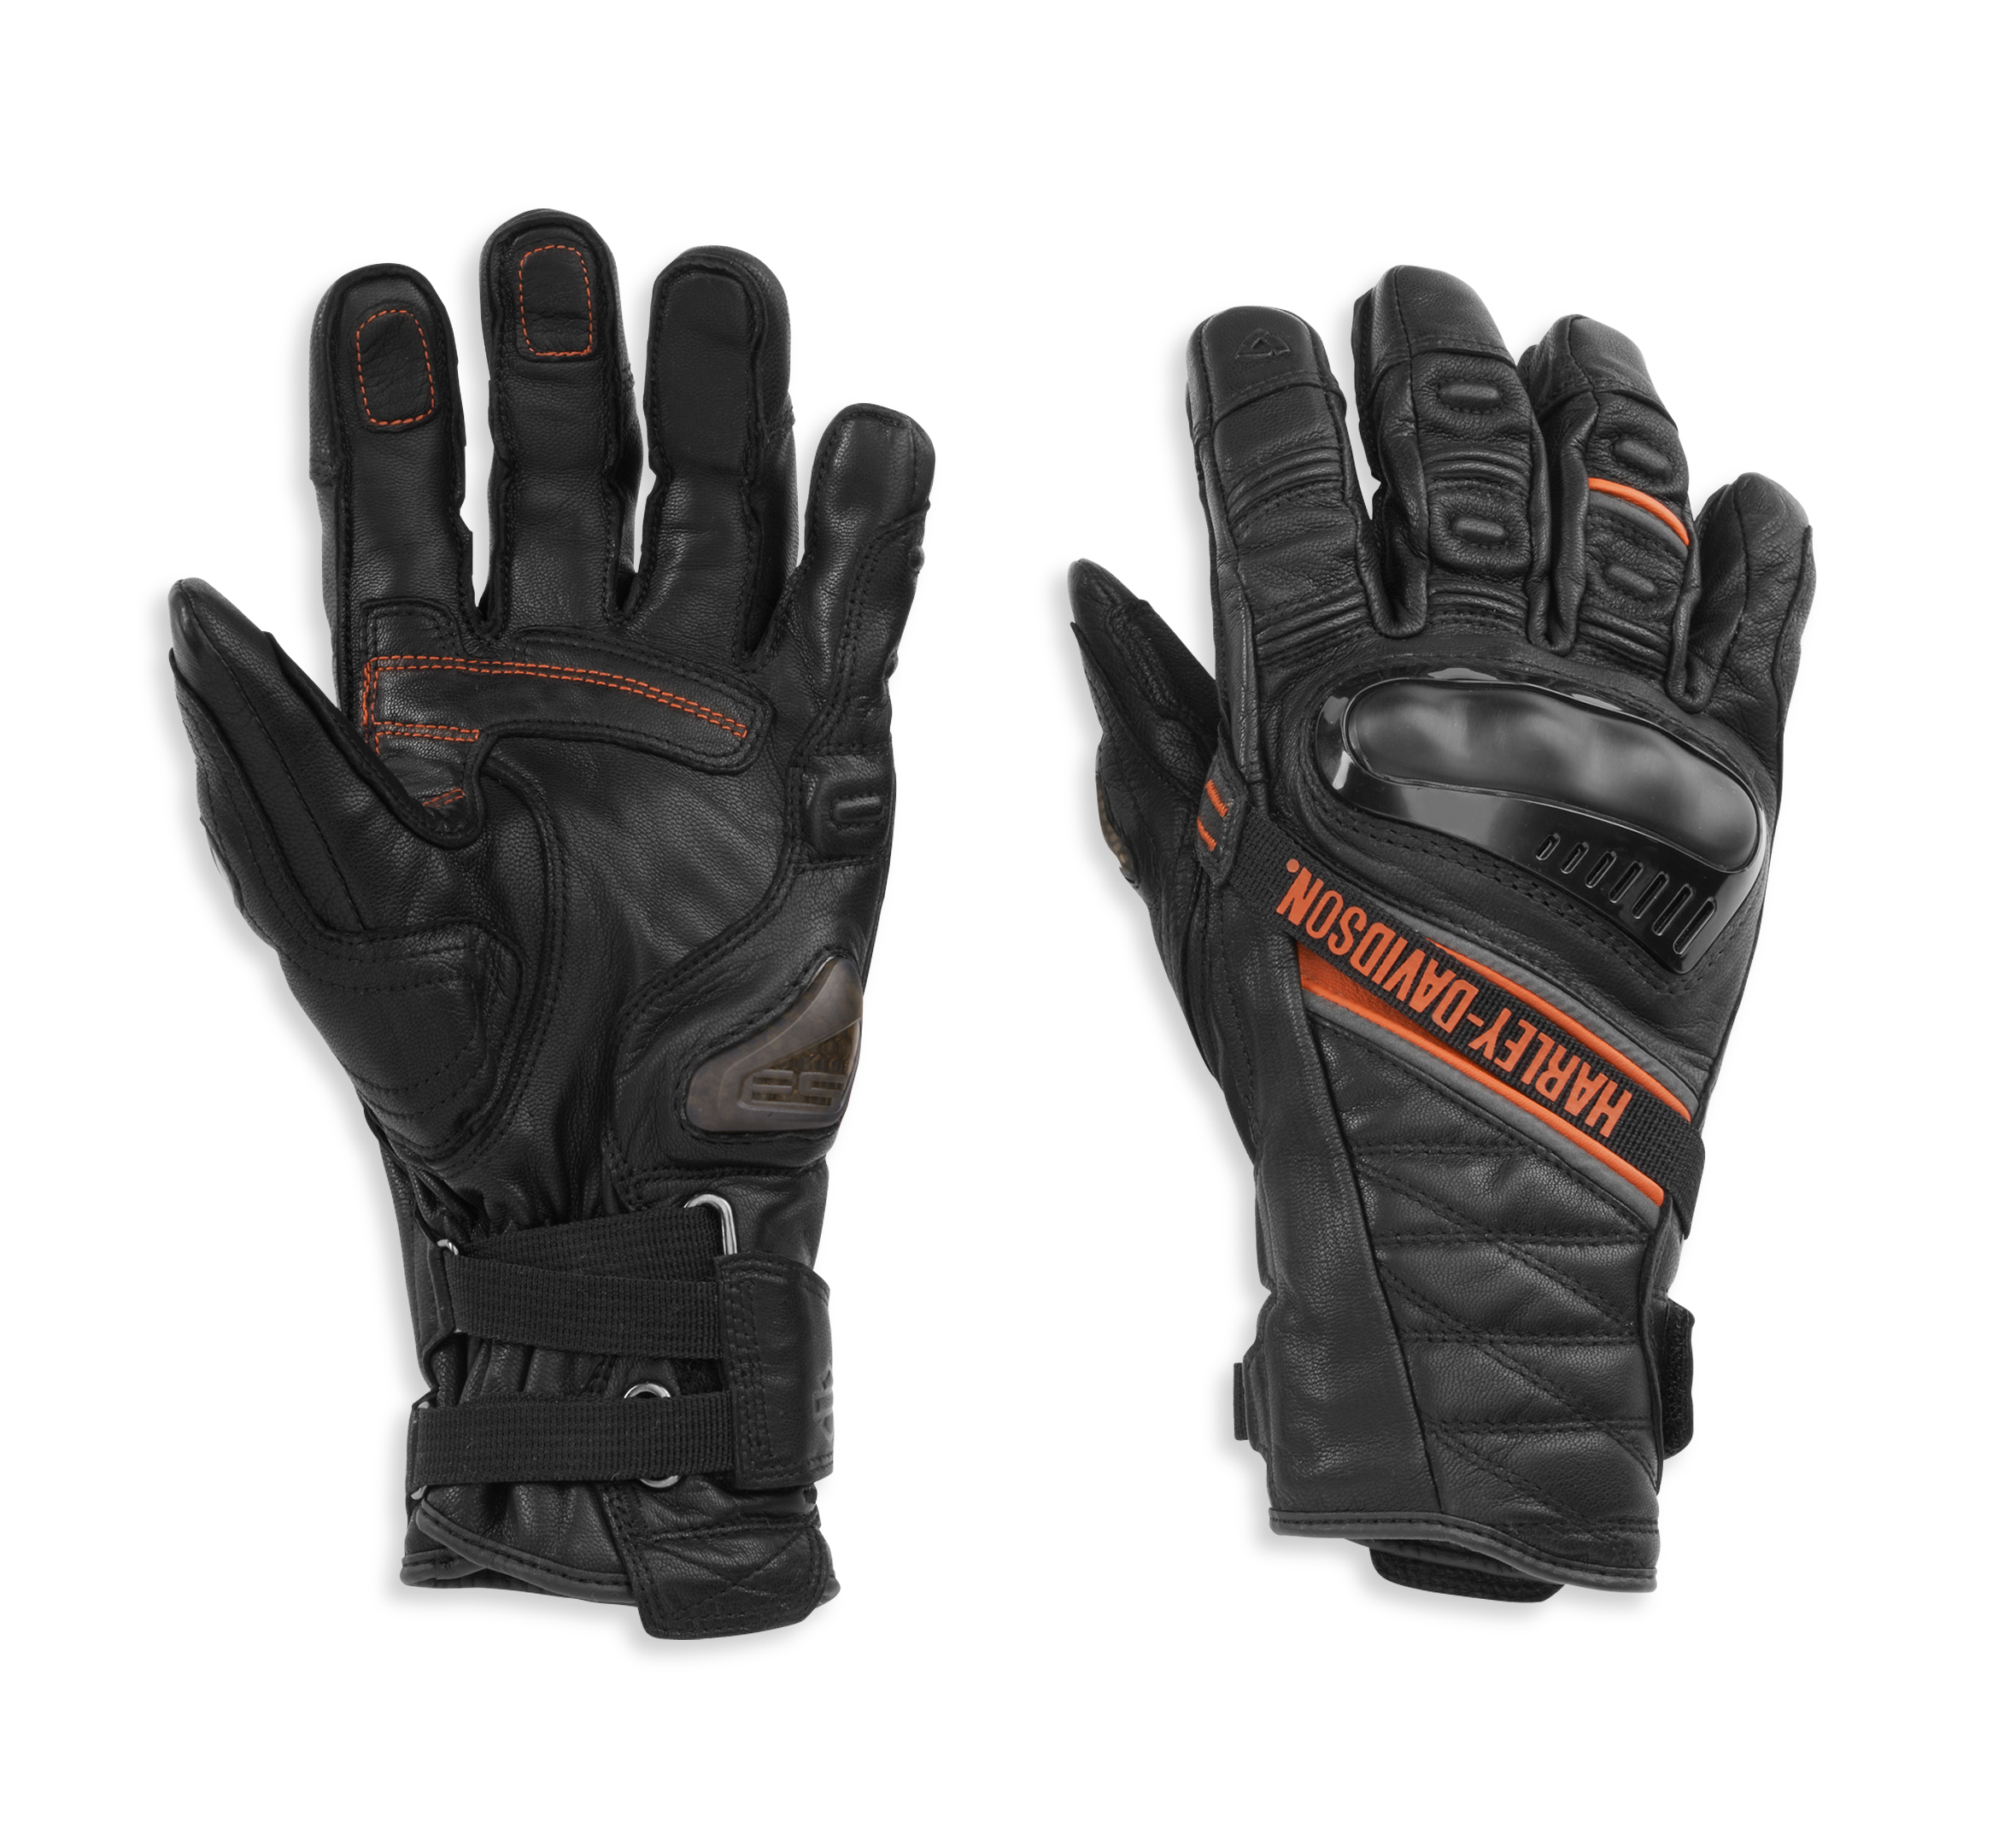 Gloves American Flag Eagle Fingerless Gloves Short Touchscreen Gloves Winter Motorcycle Biker Mitten